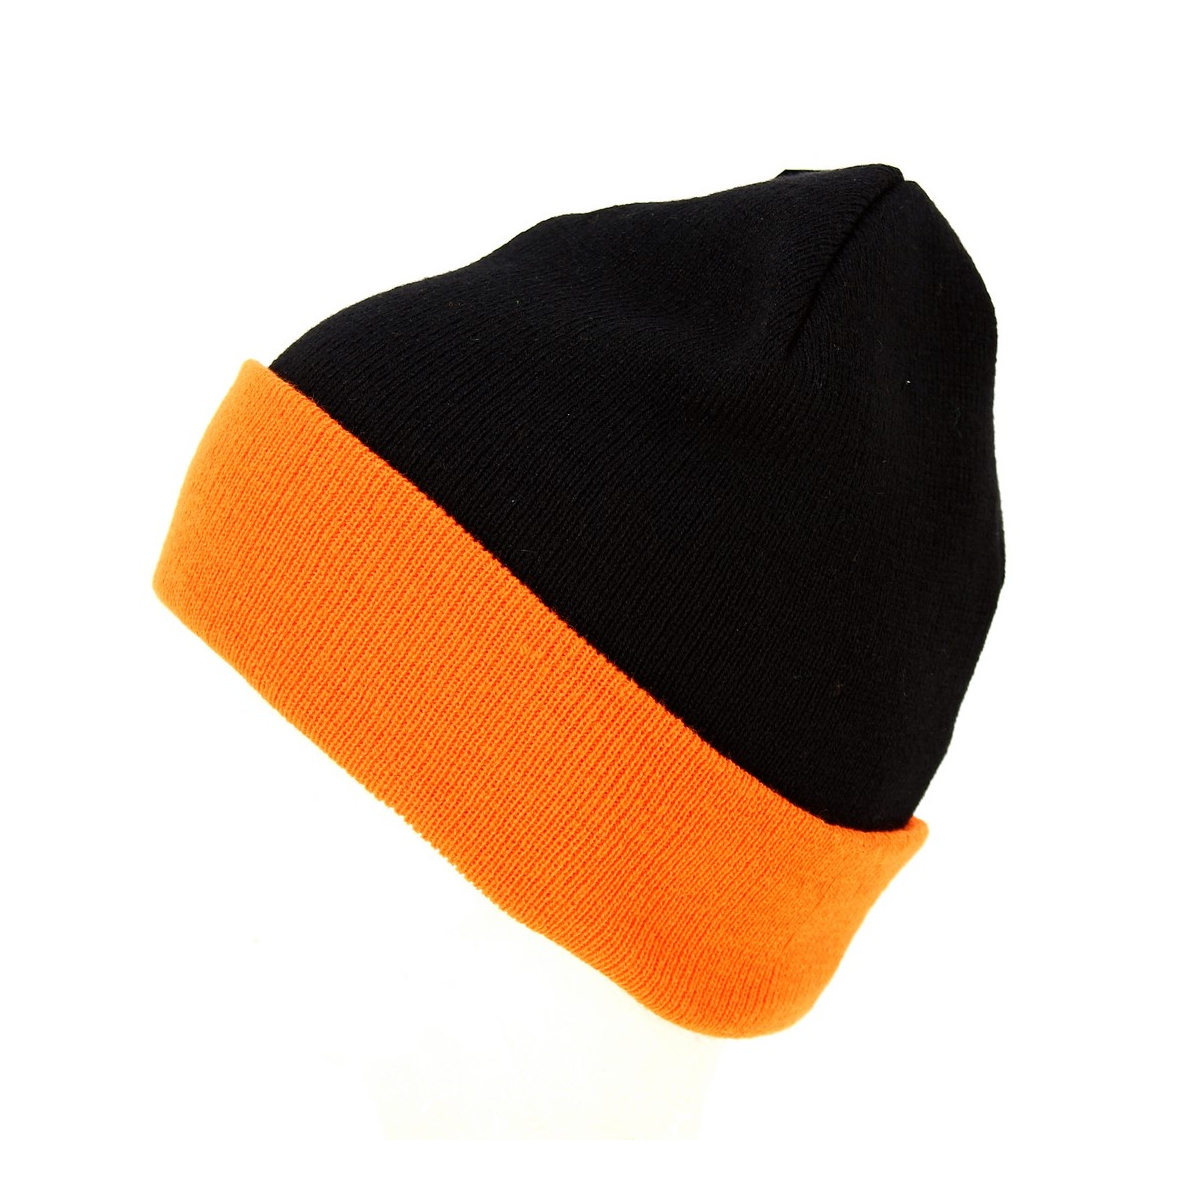 Bonnet - Noir et orange